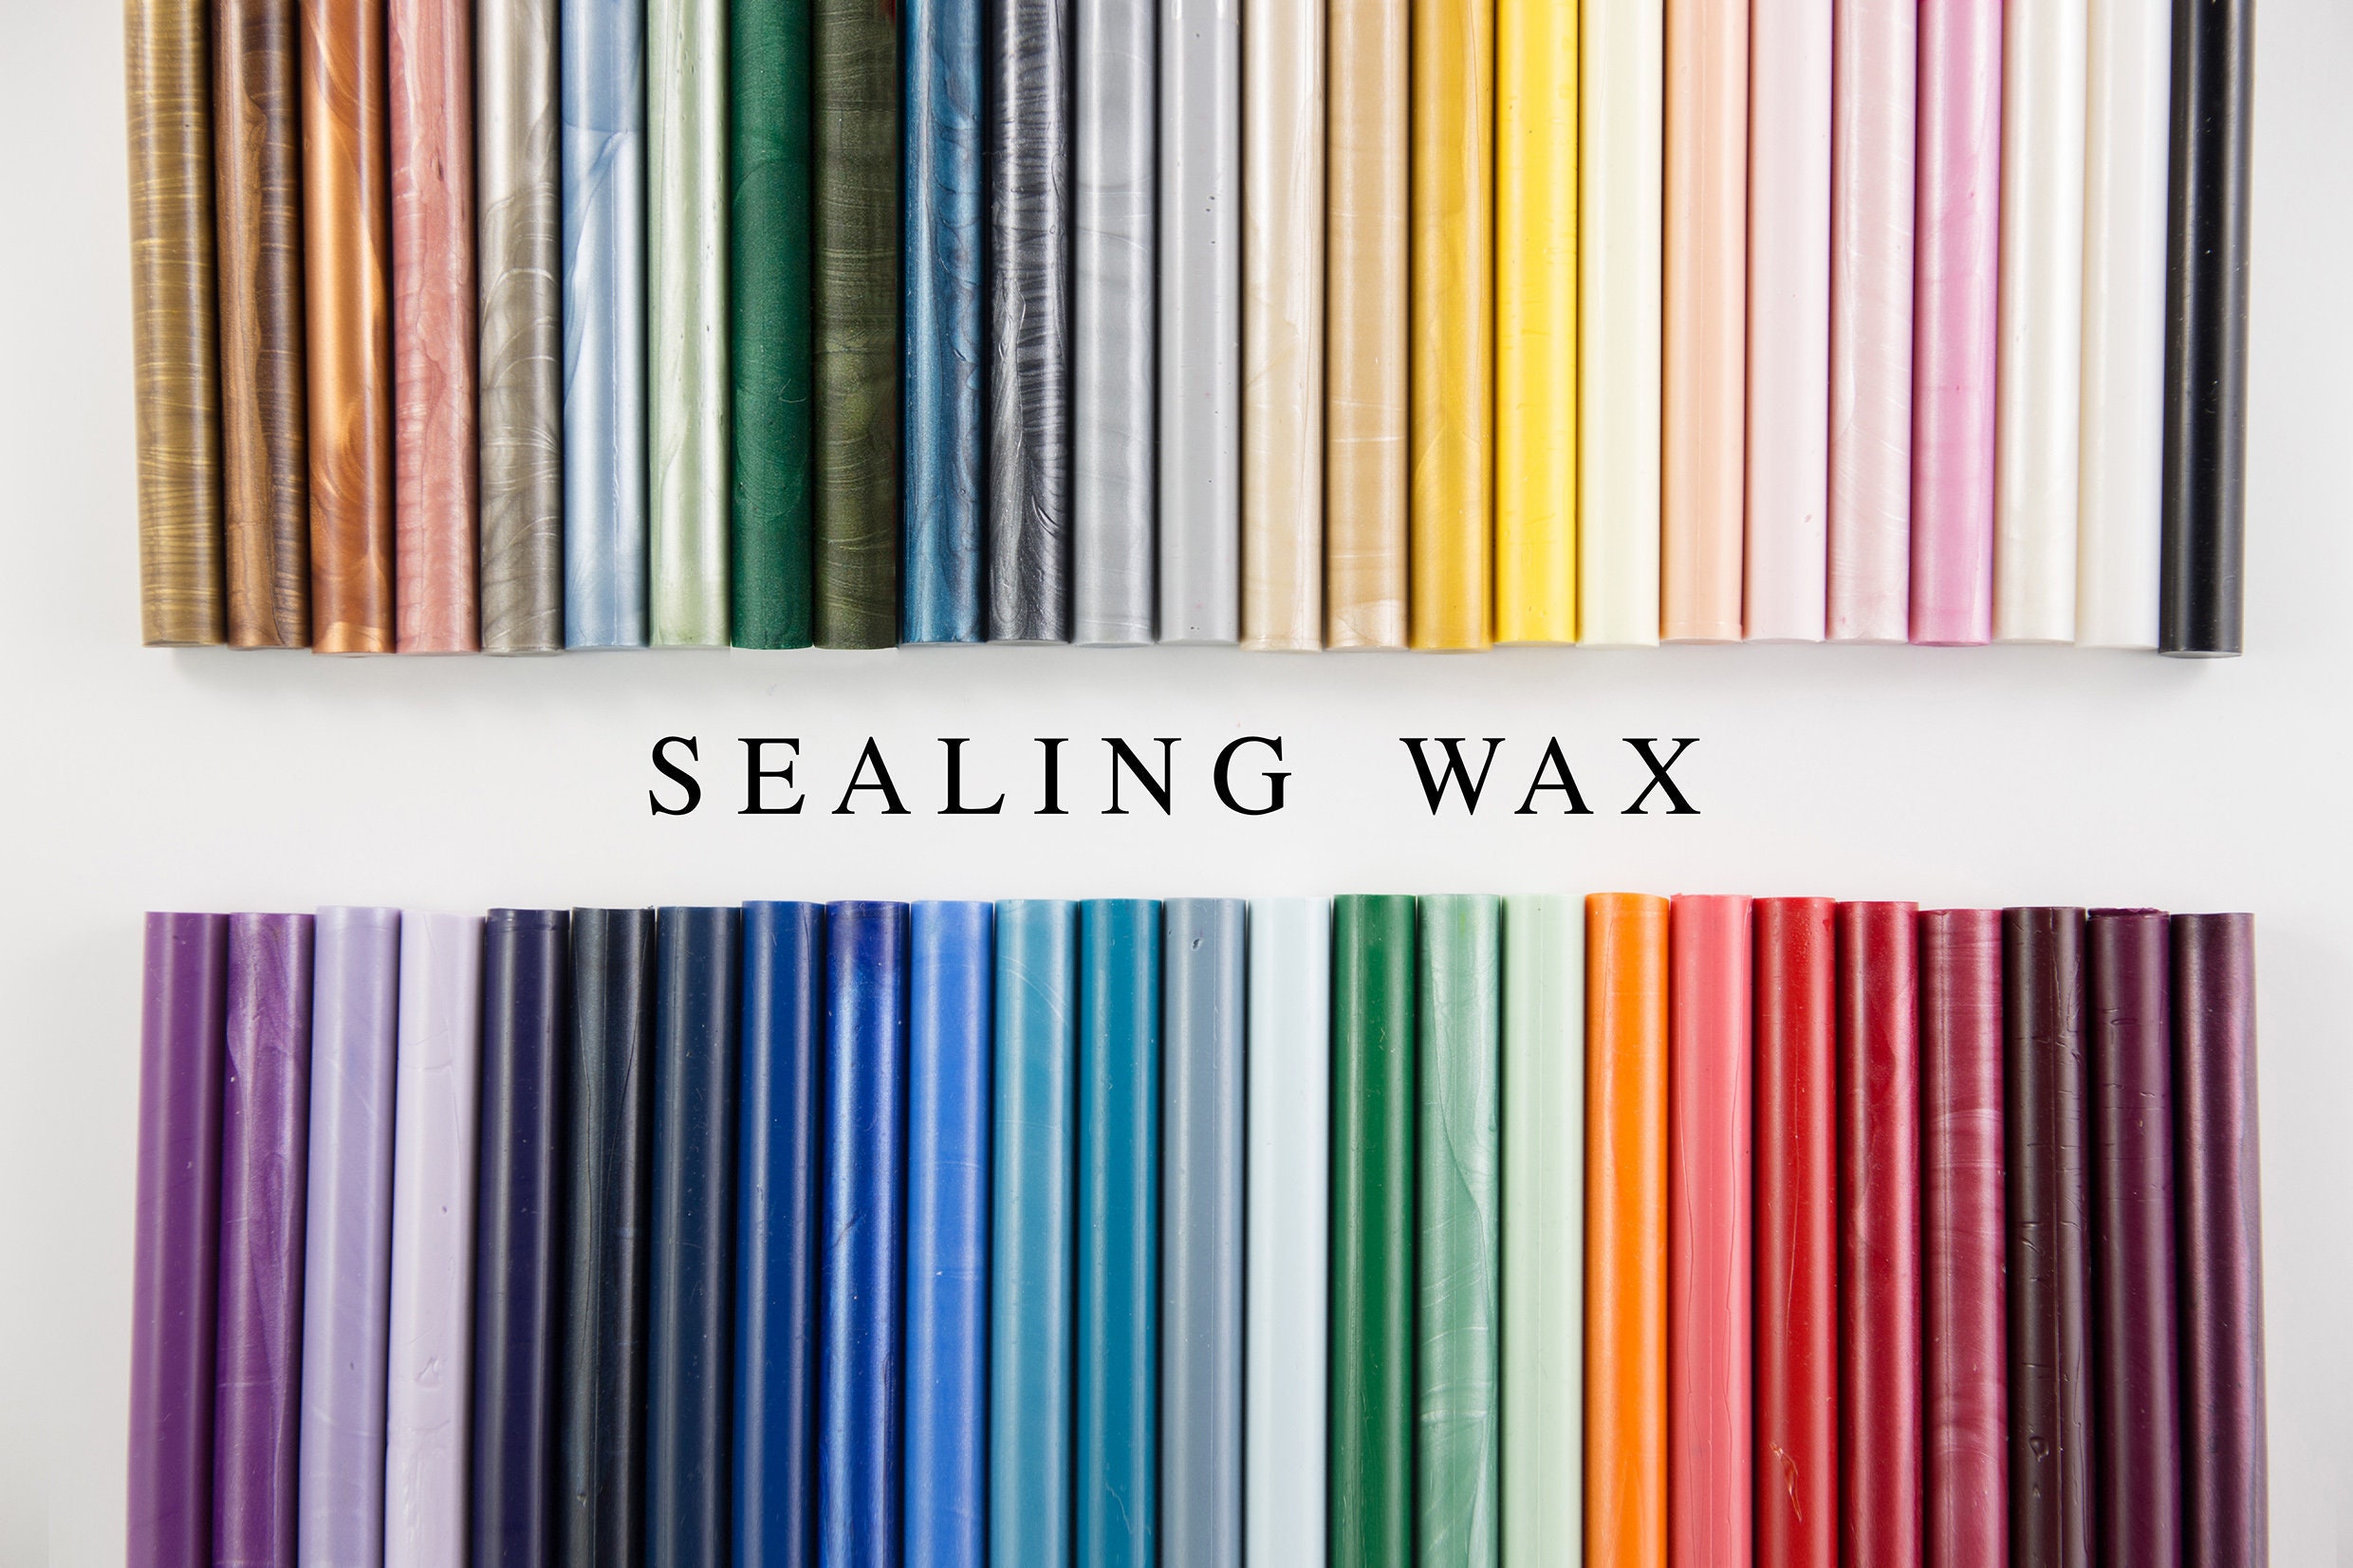 Glue Gun Sealing Wax,Wax Seal Stamp,59 colors Pastel Wax Sealing Wax Glue Gun Wax,Mailing Wax Wax Sticks 5pcs Wax Seal